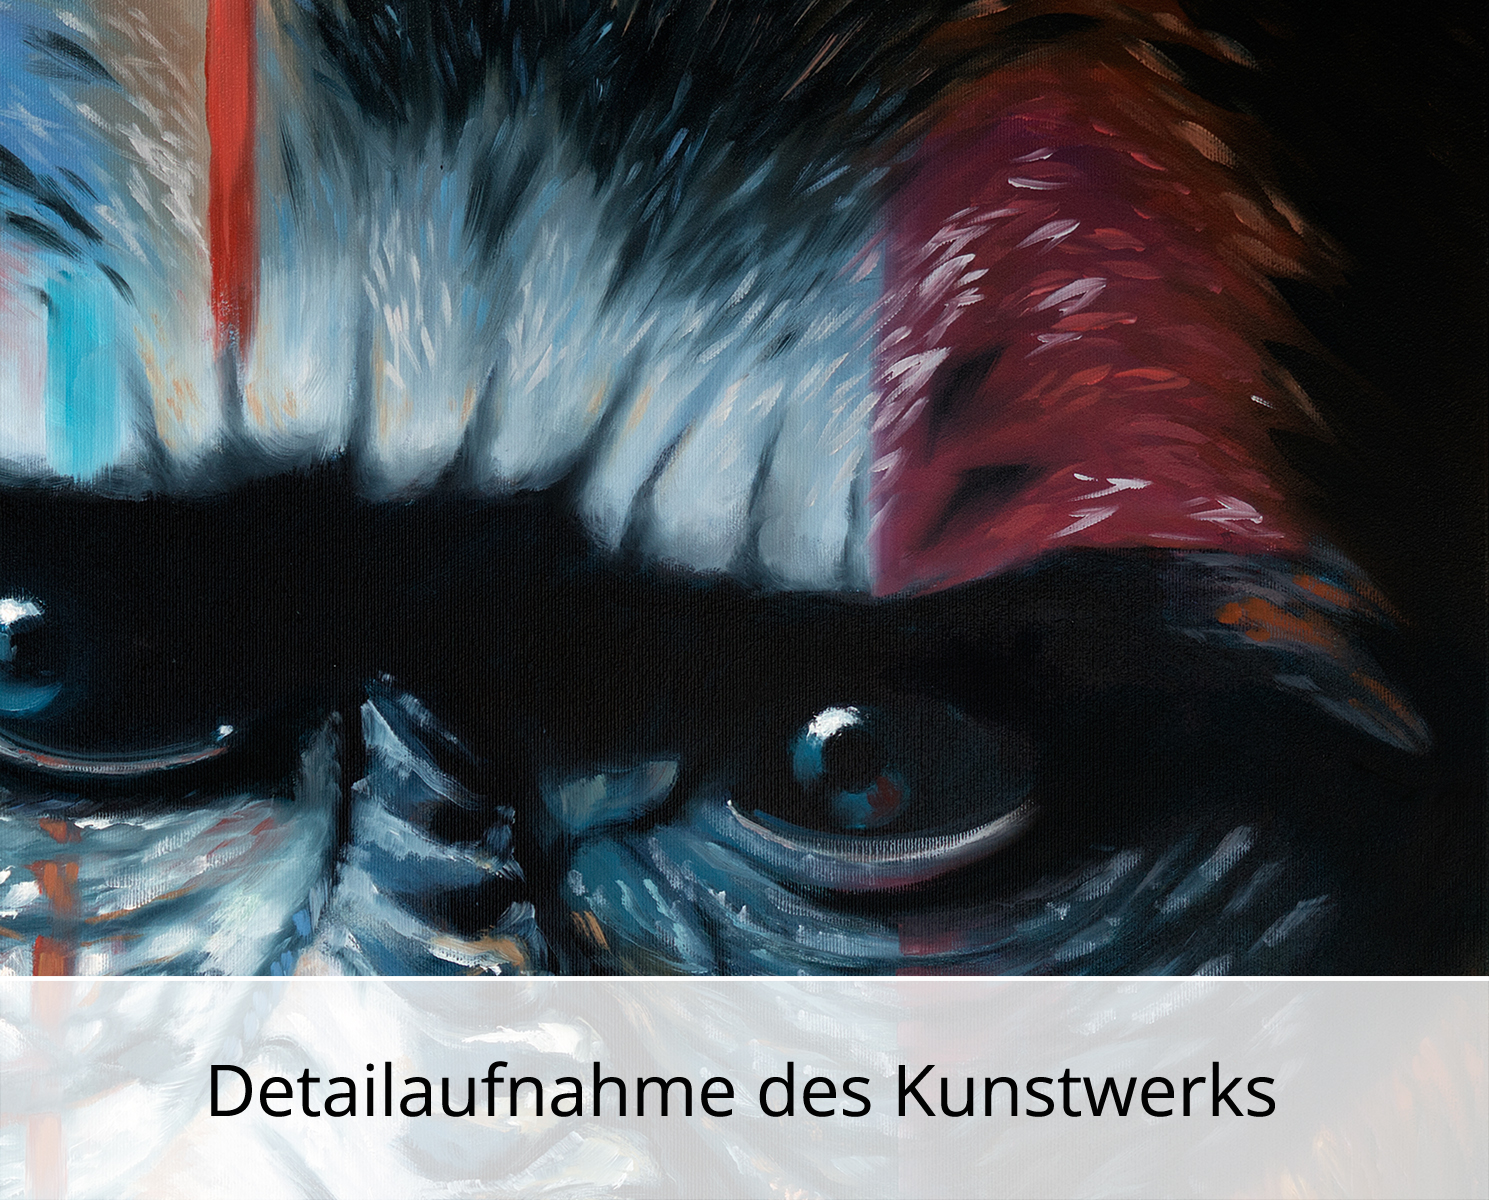 U. Fehrmann: "Quo vadis? Nr. 1, Gorilla", Originalgemälde (Unikat)